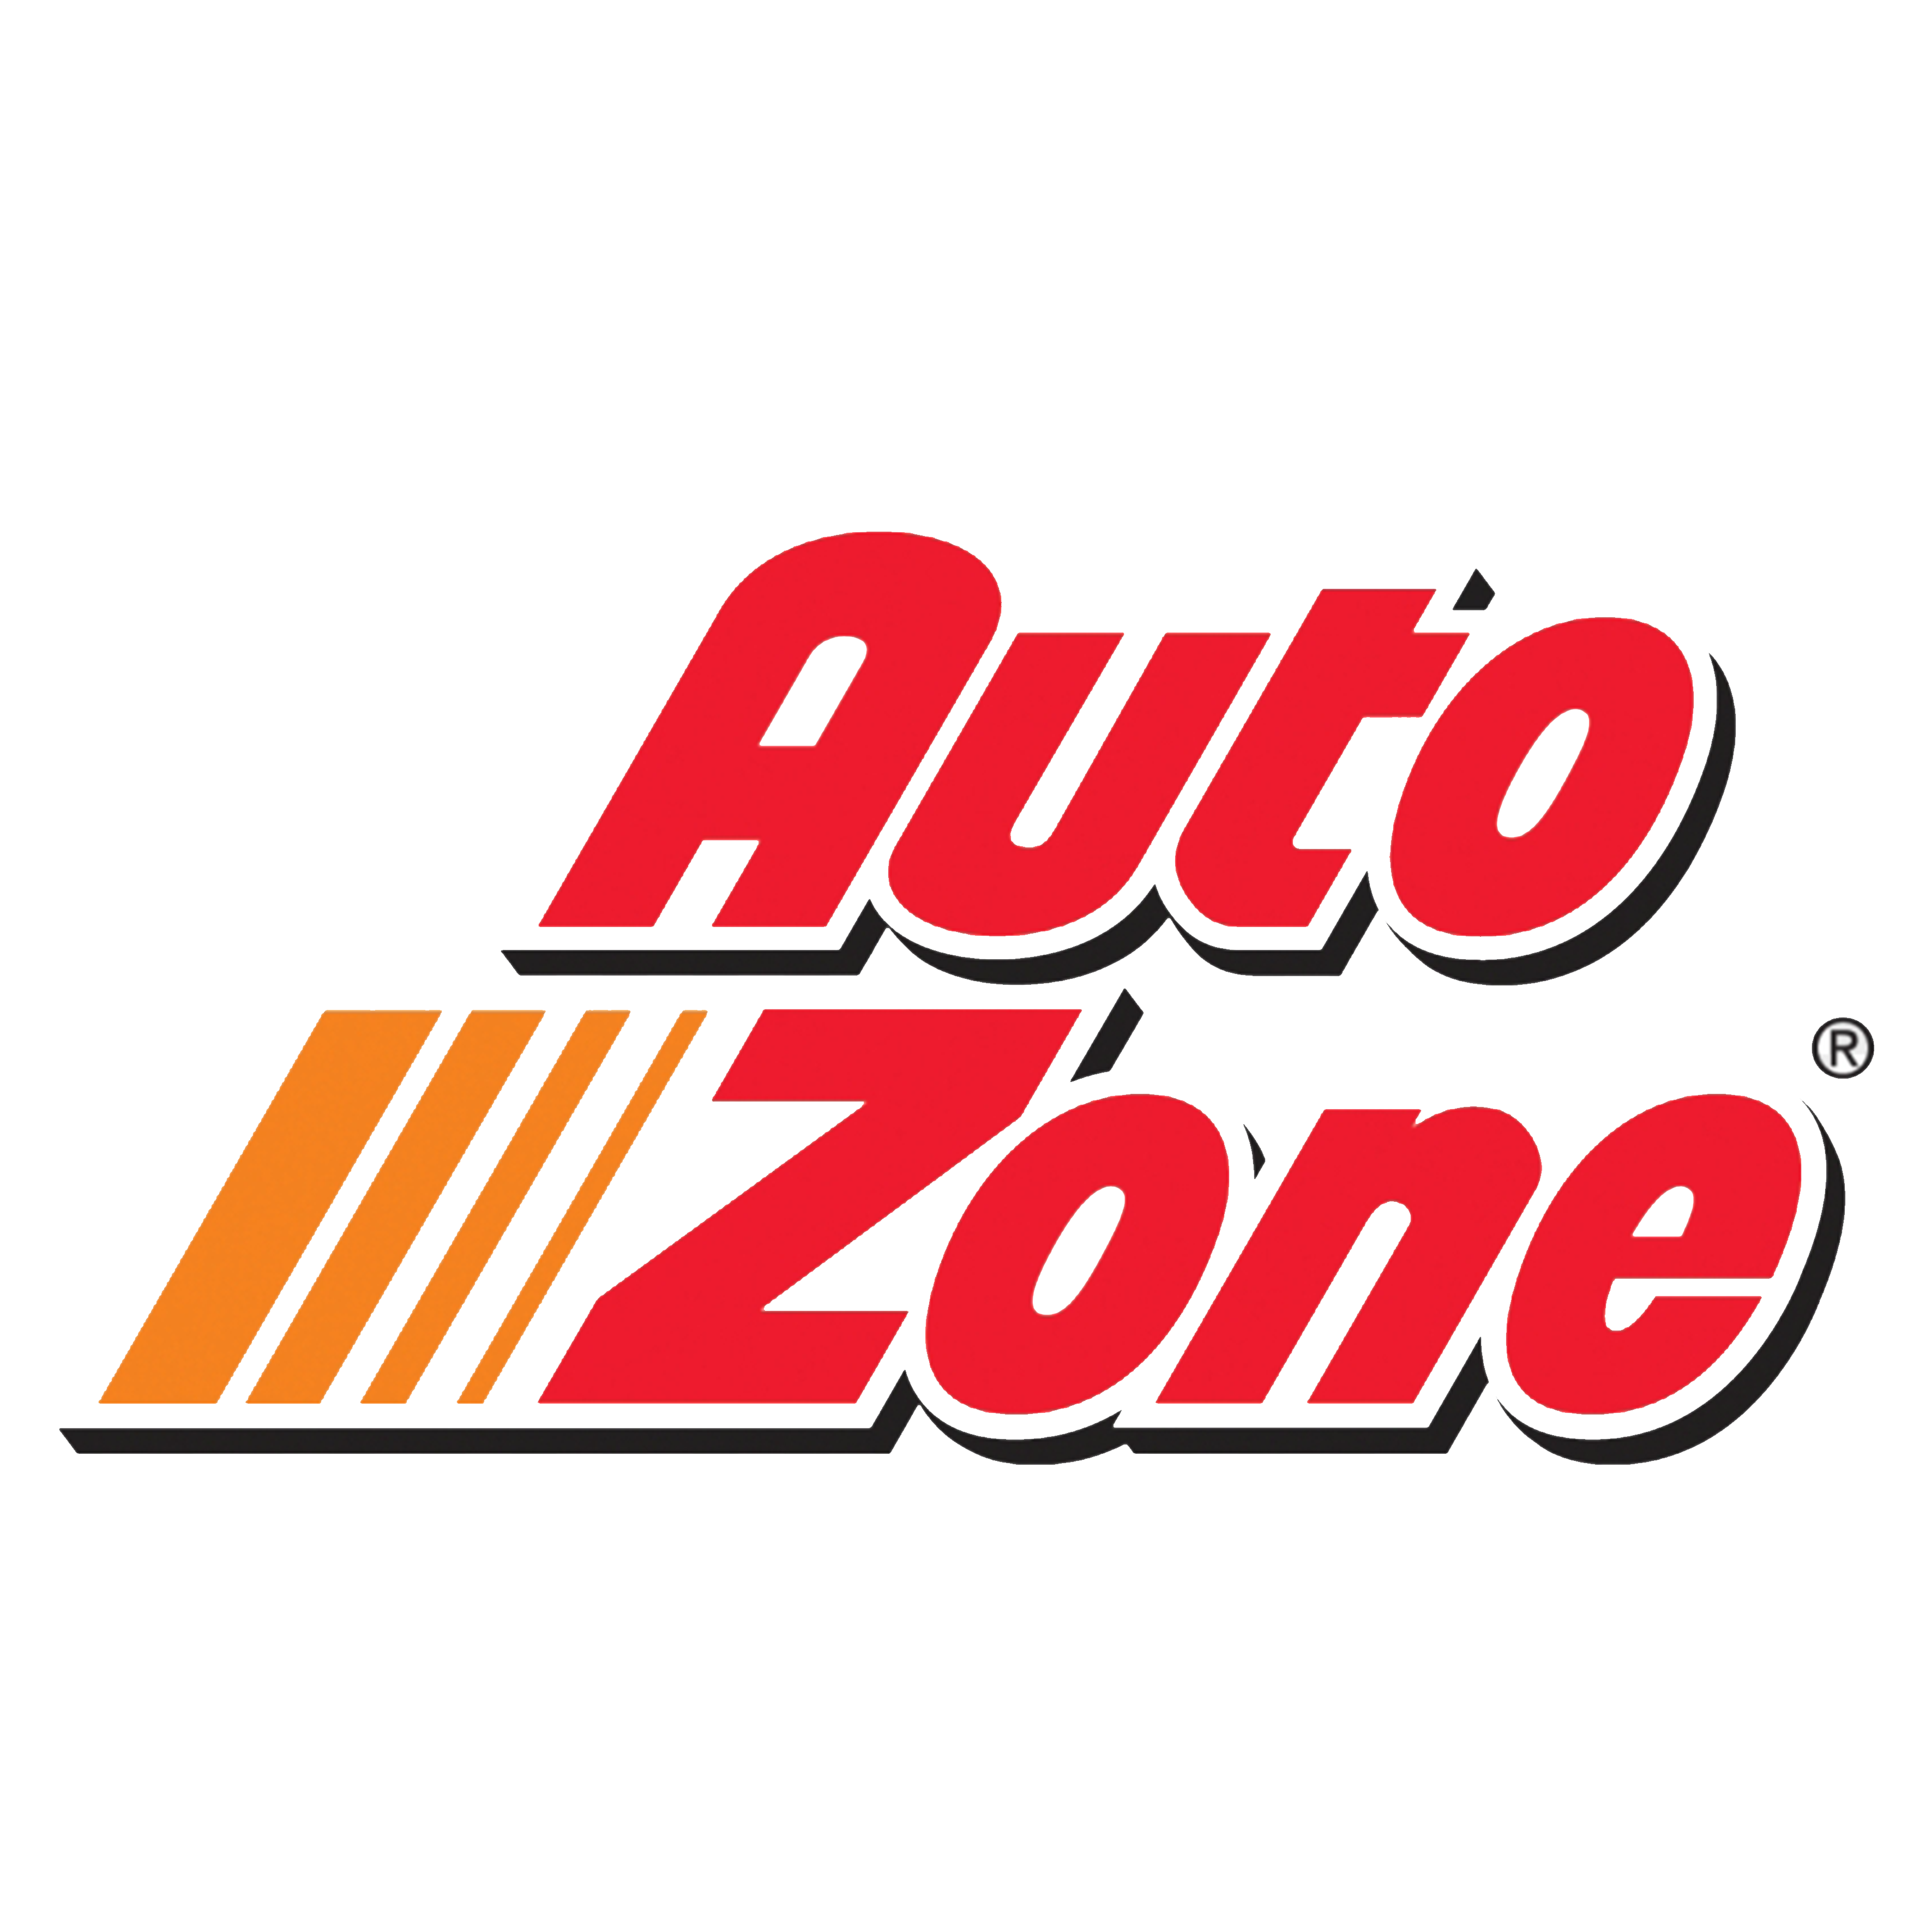 autozone